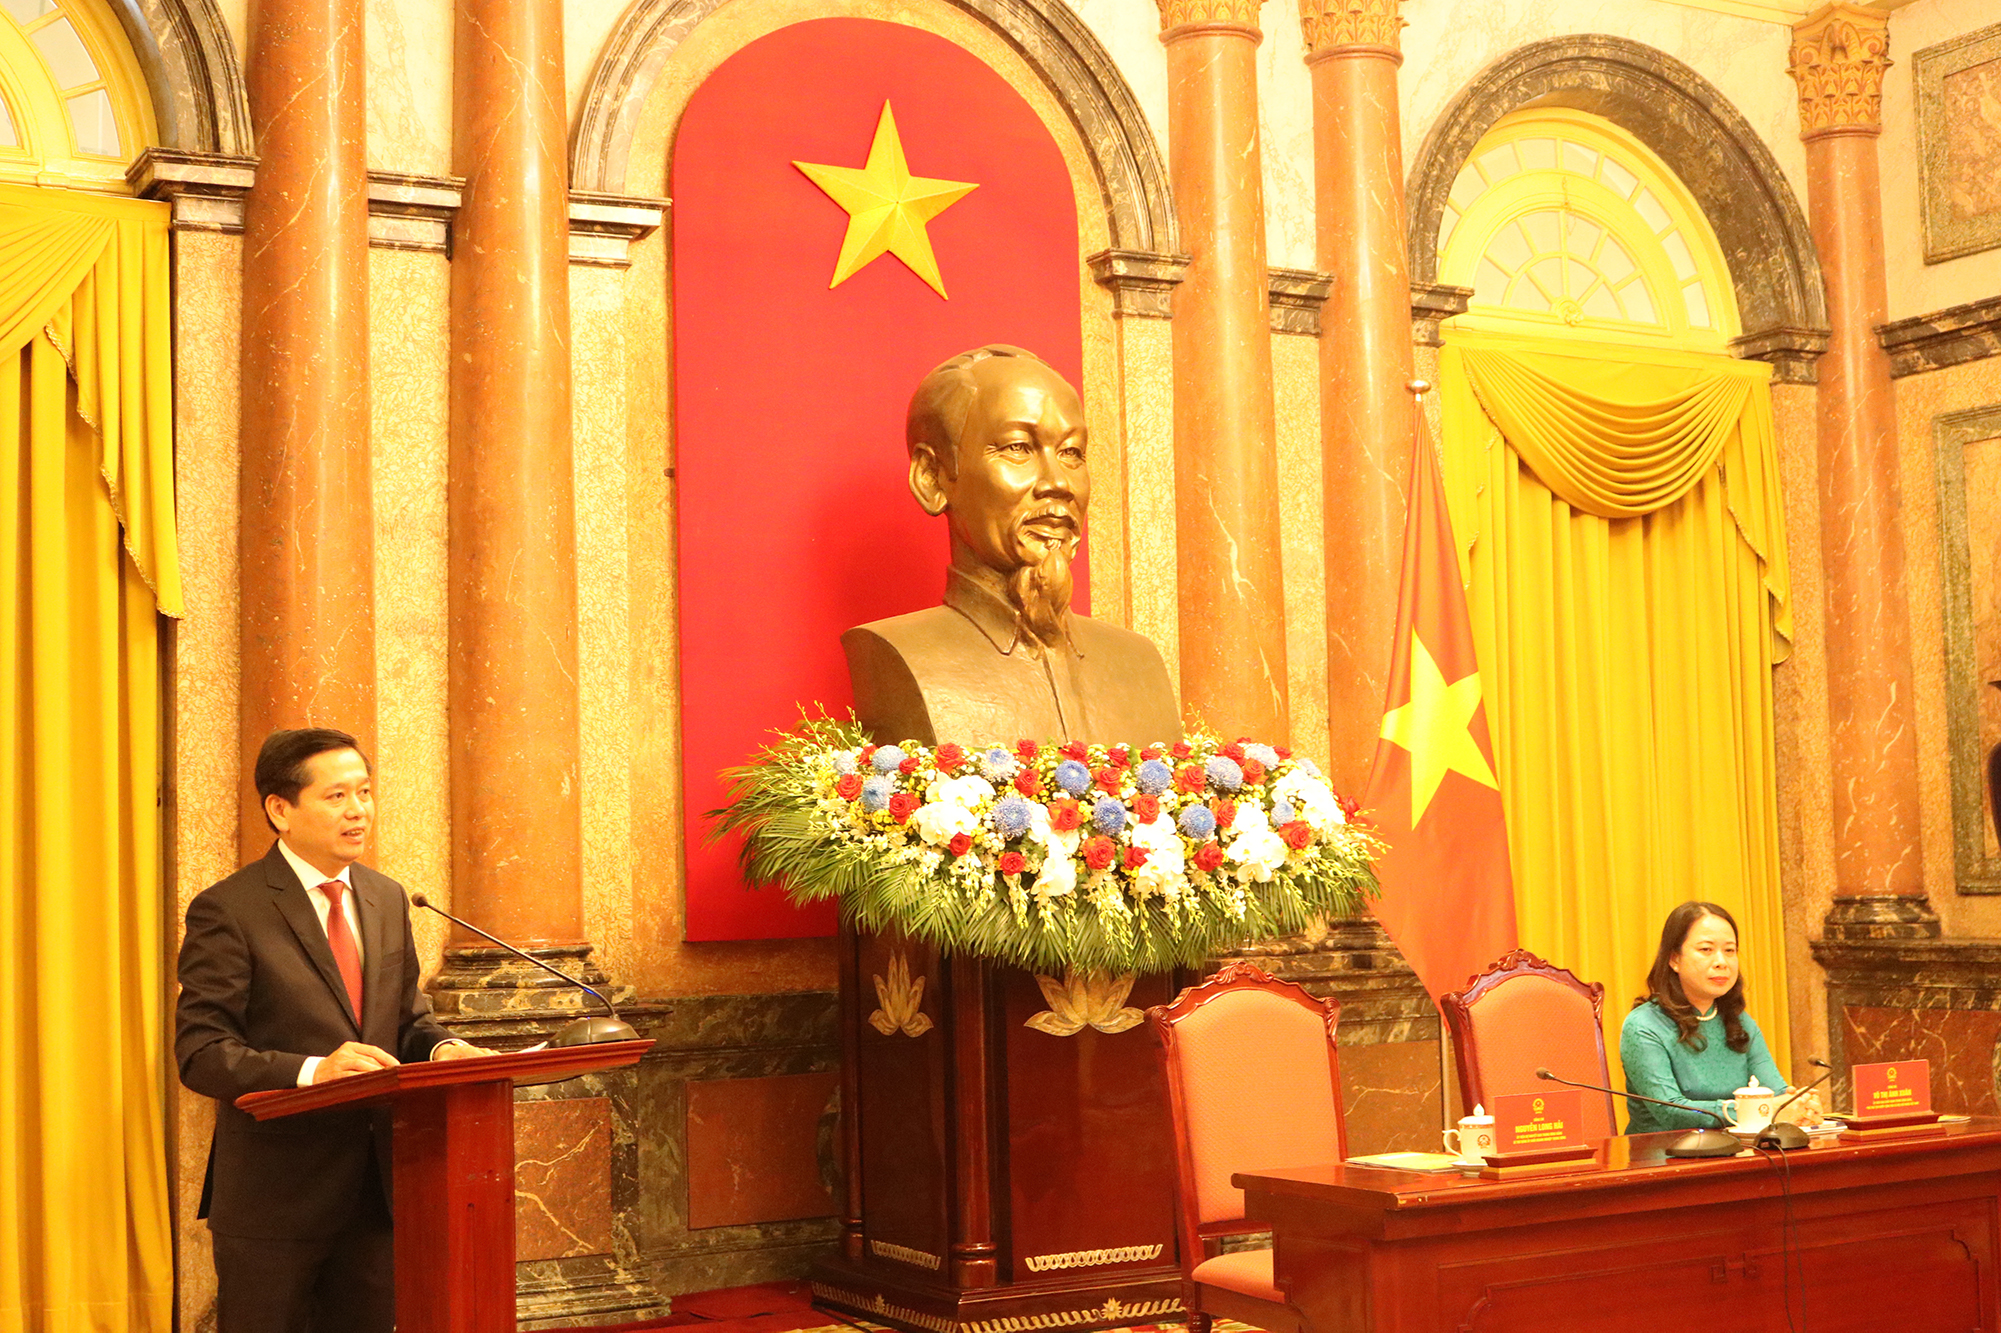 Đồng chí Nguyễn Long Hải, Bí thư Đảng uỷ Khối Doanh nghiệp Trung ương phát biểu đáp từ.Nguyê